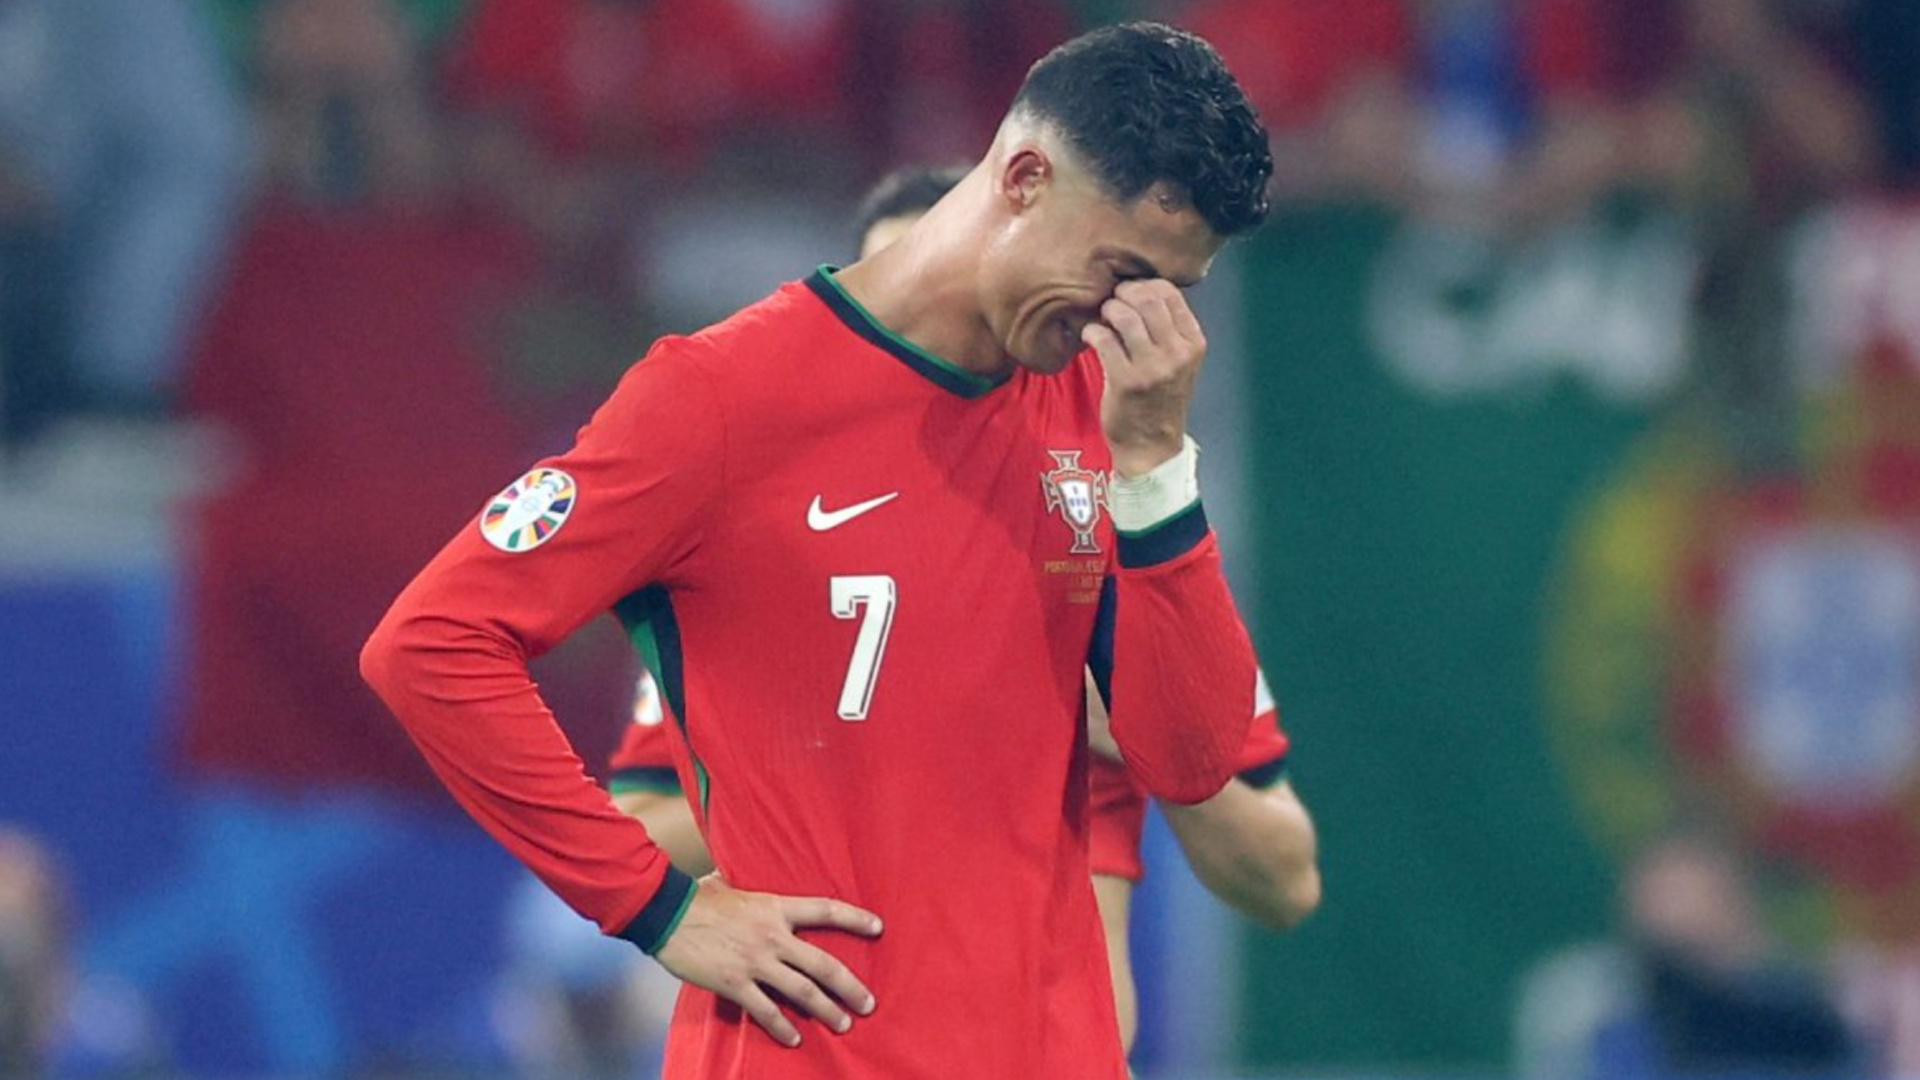 Eurocopa: o possível erro de arbitragem que fez Cristiano Ronaldo chorar